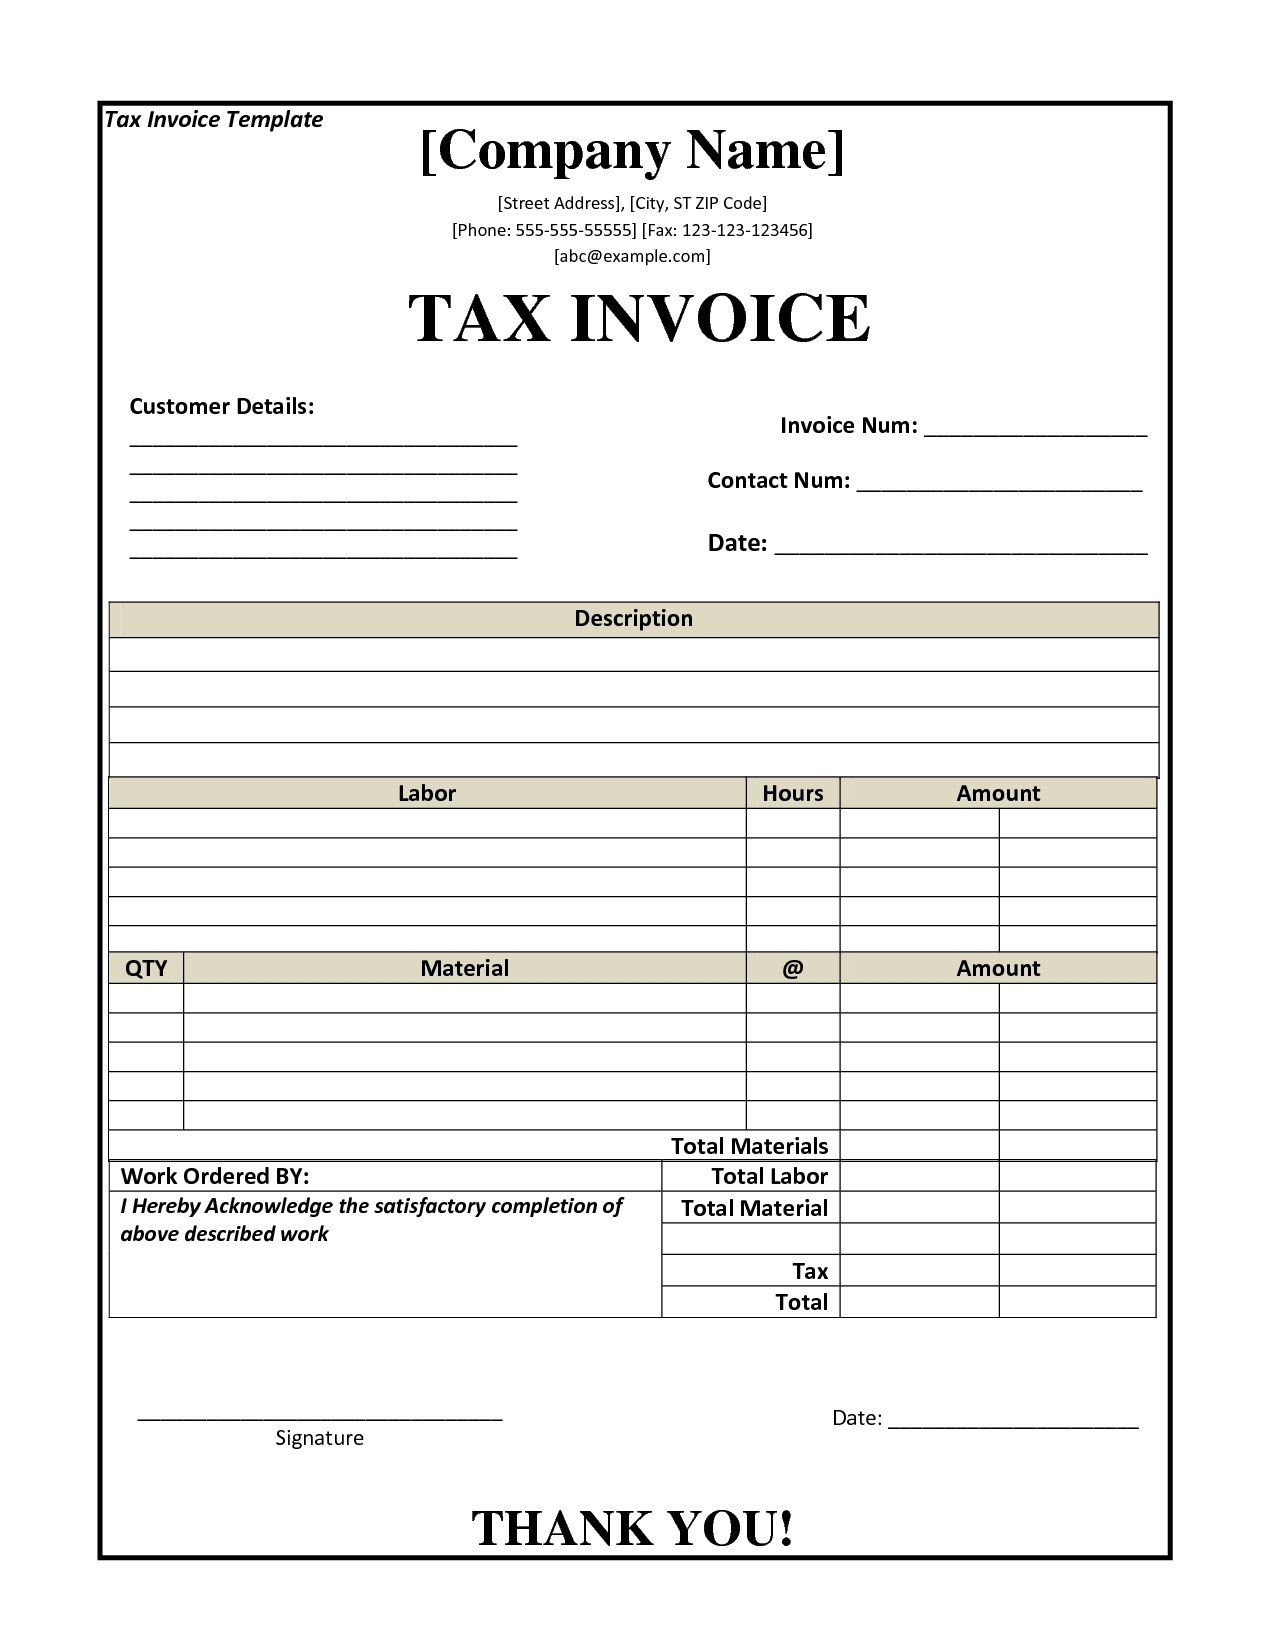 tax invoice layout tax templates 1275 X 1650